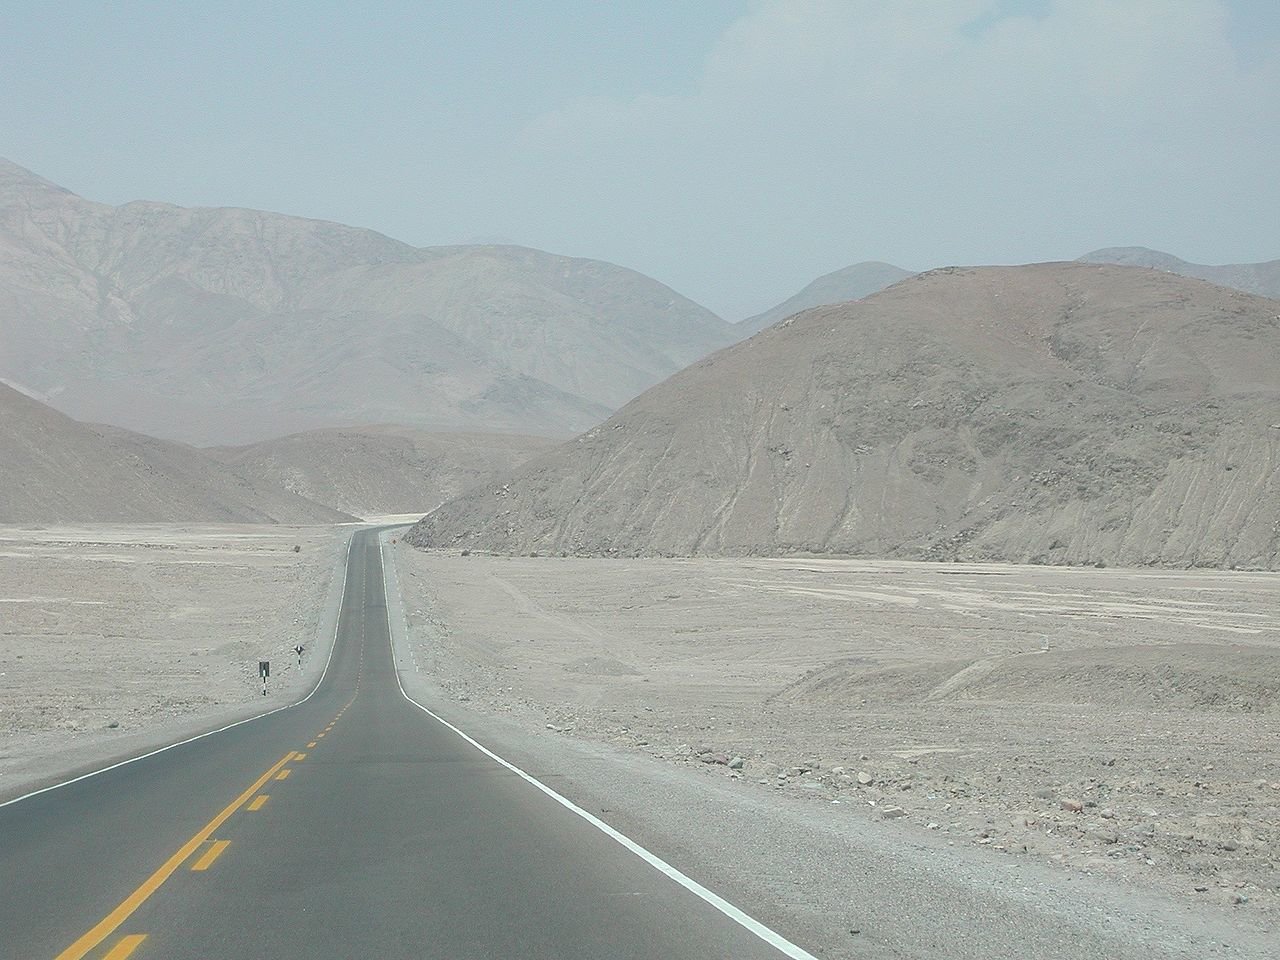 Část dálnice "Panamericana" vedoucí přes poušť Atacama v Peru (foto: Angelica Jacobi)